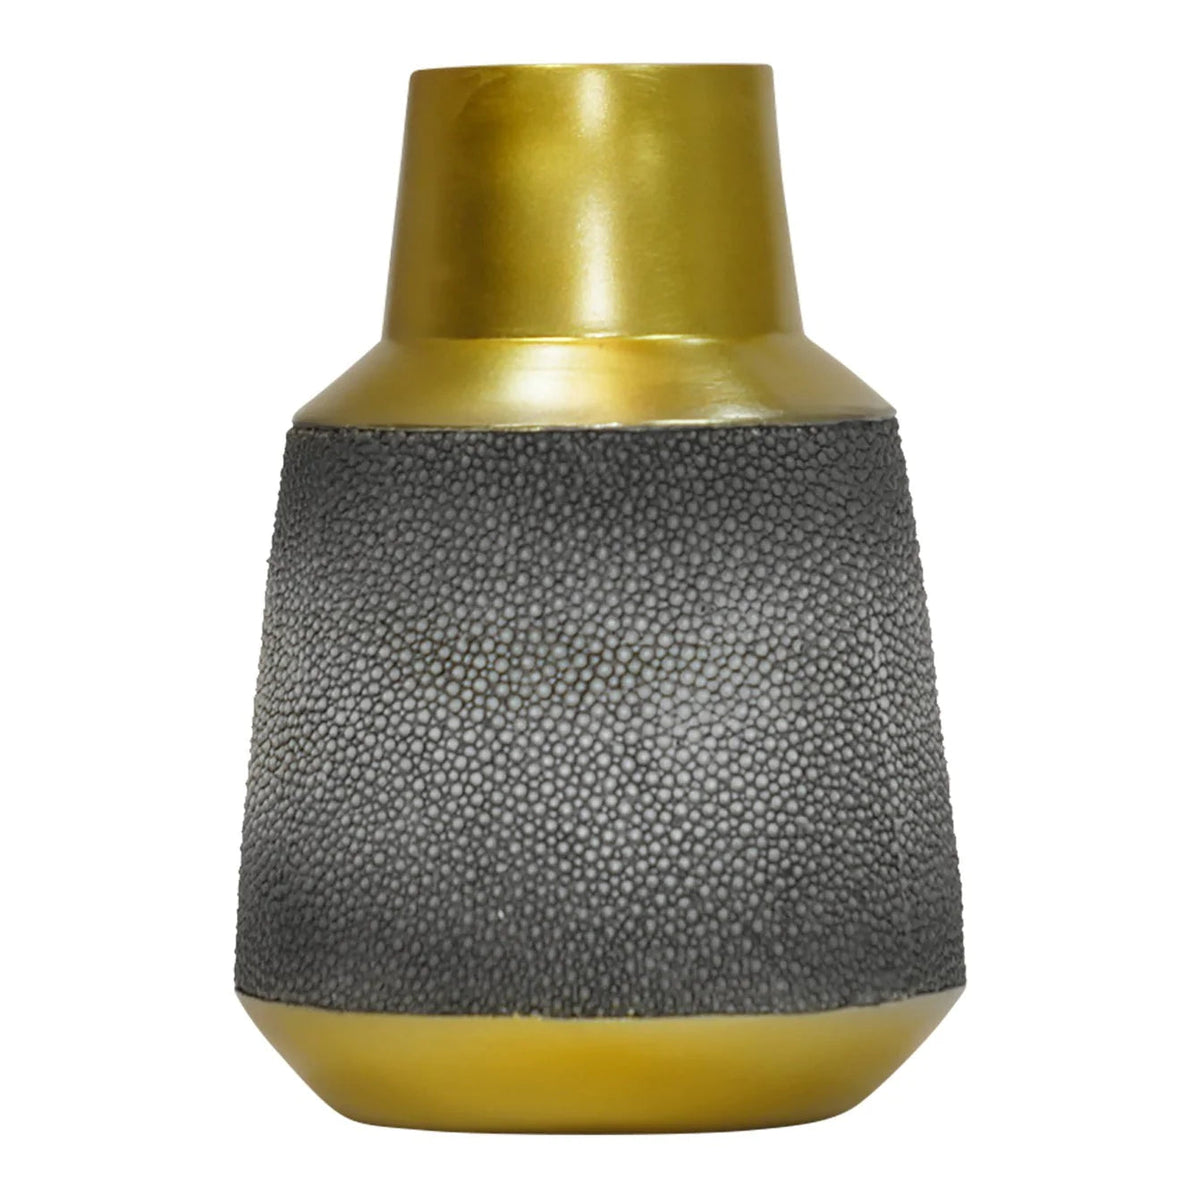 Asbury Small Vase - Grey & Gold Finish